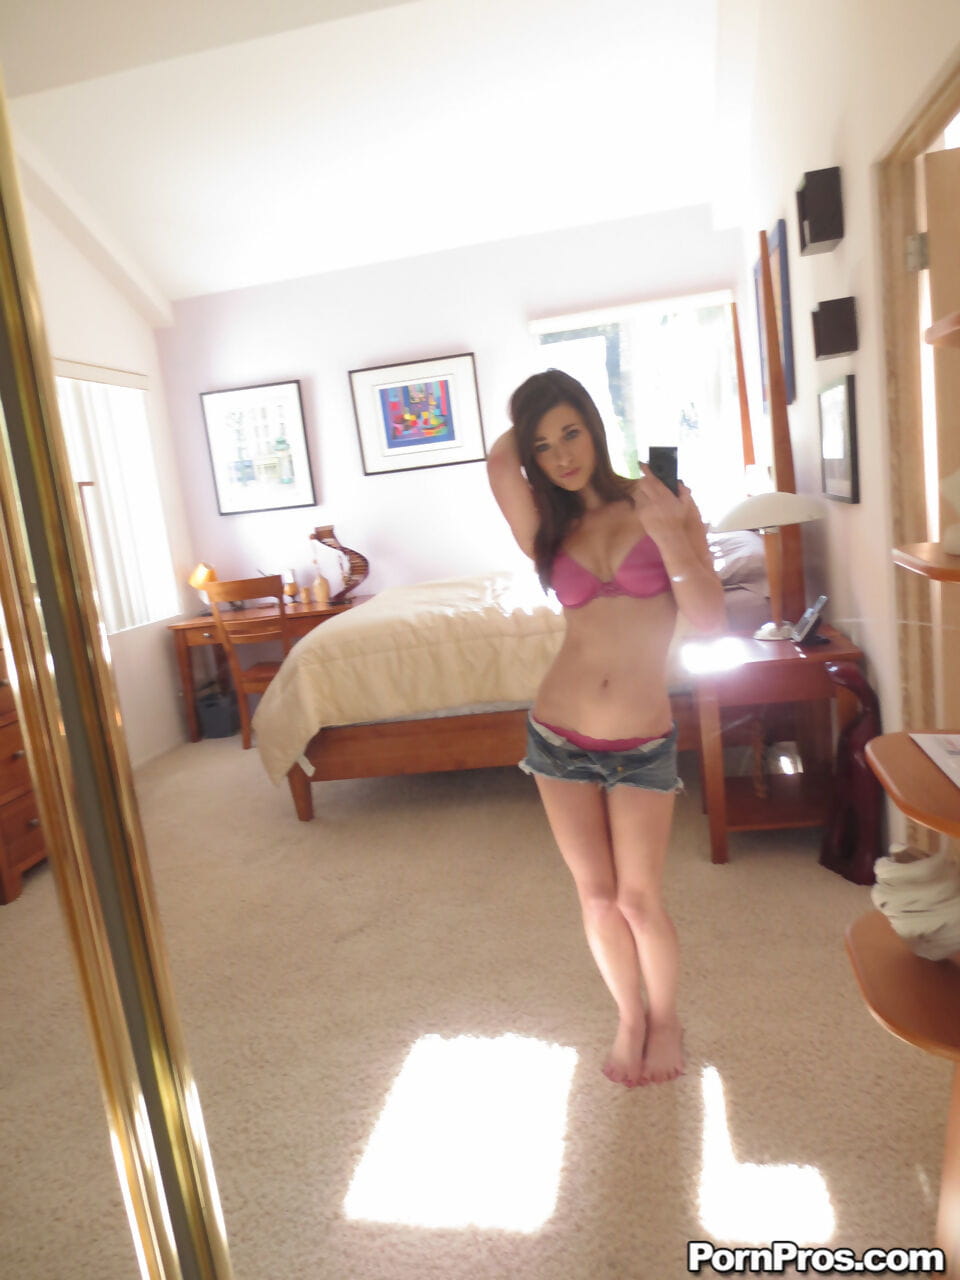 اسي تشانينج يتكبر لها الطبيعية الثدي يحصل عارية و يأخذ مثير selfies